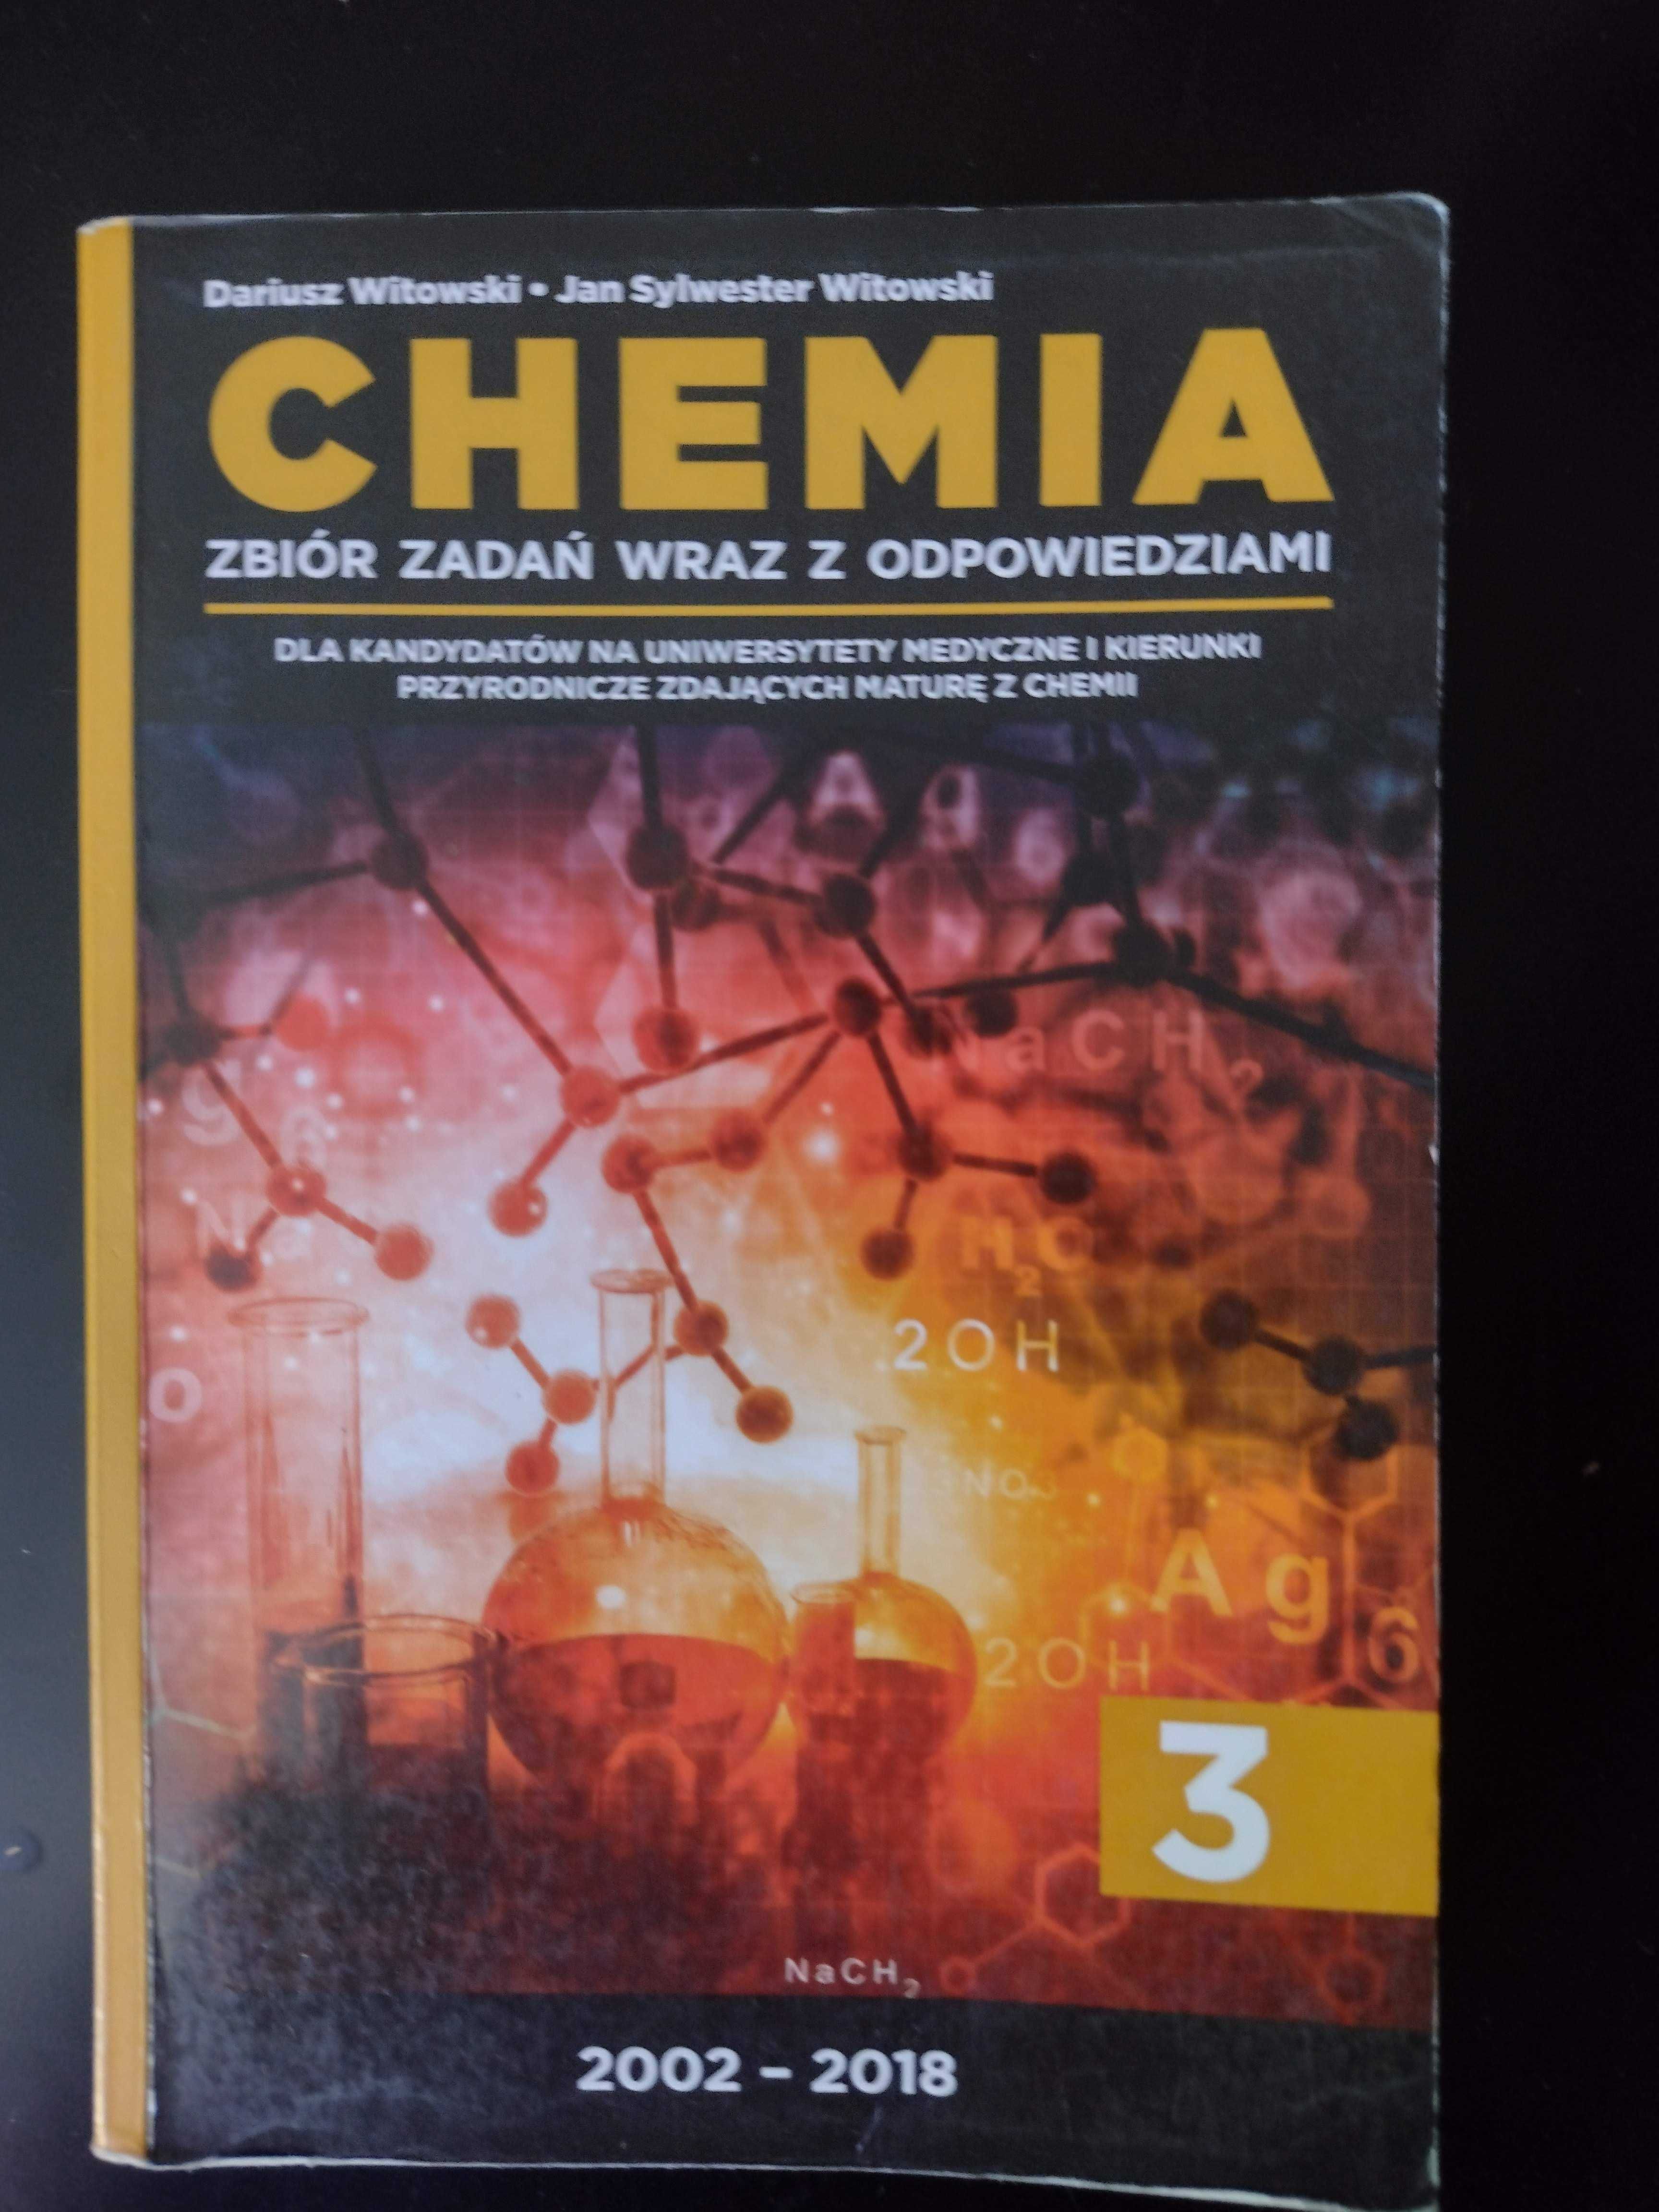 Witowski - Chemia 3 2018